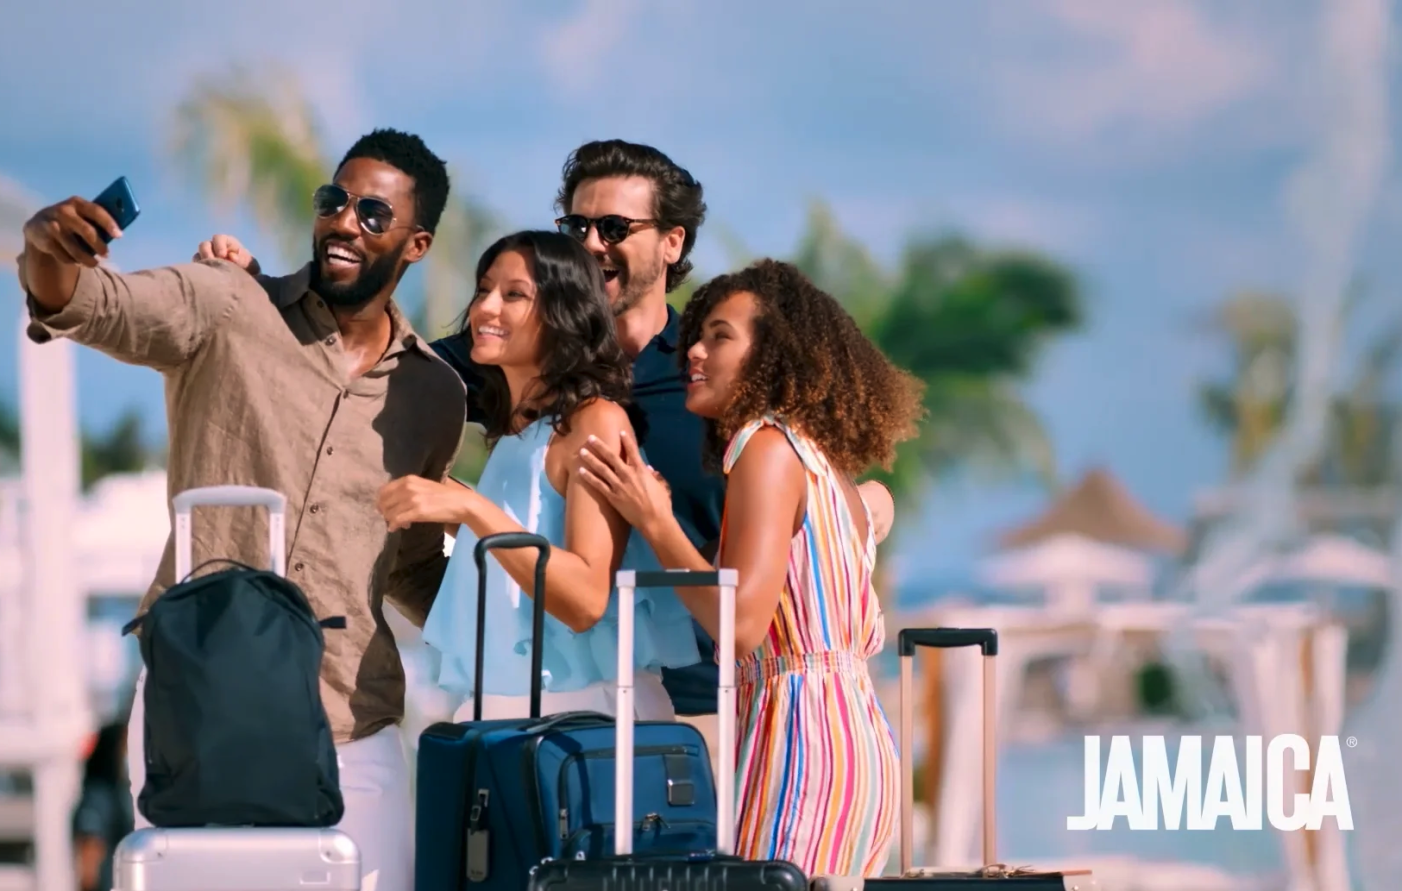 Jamaica Video